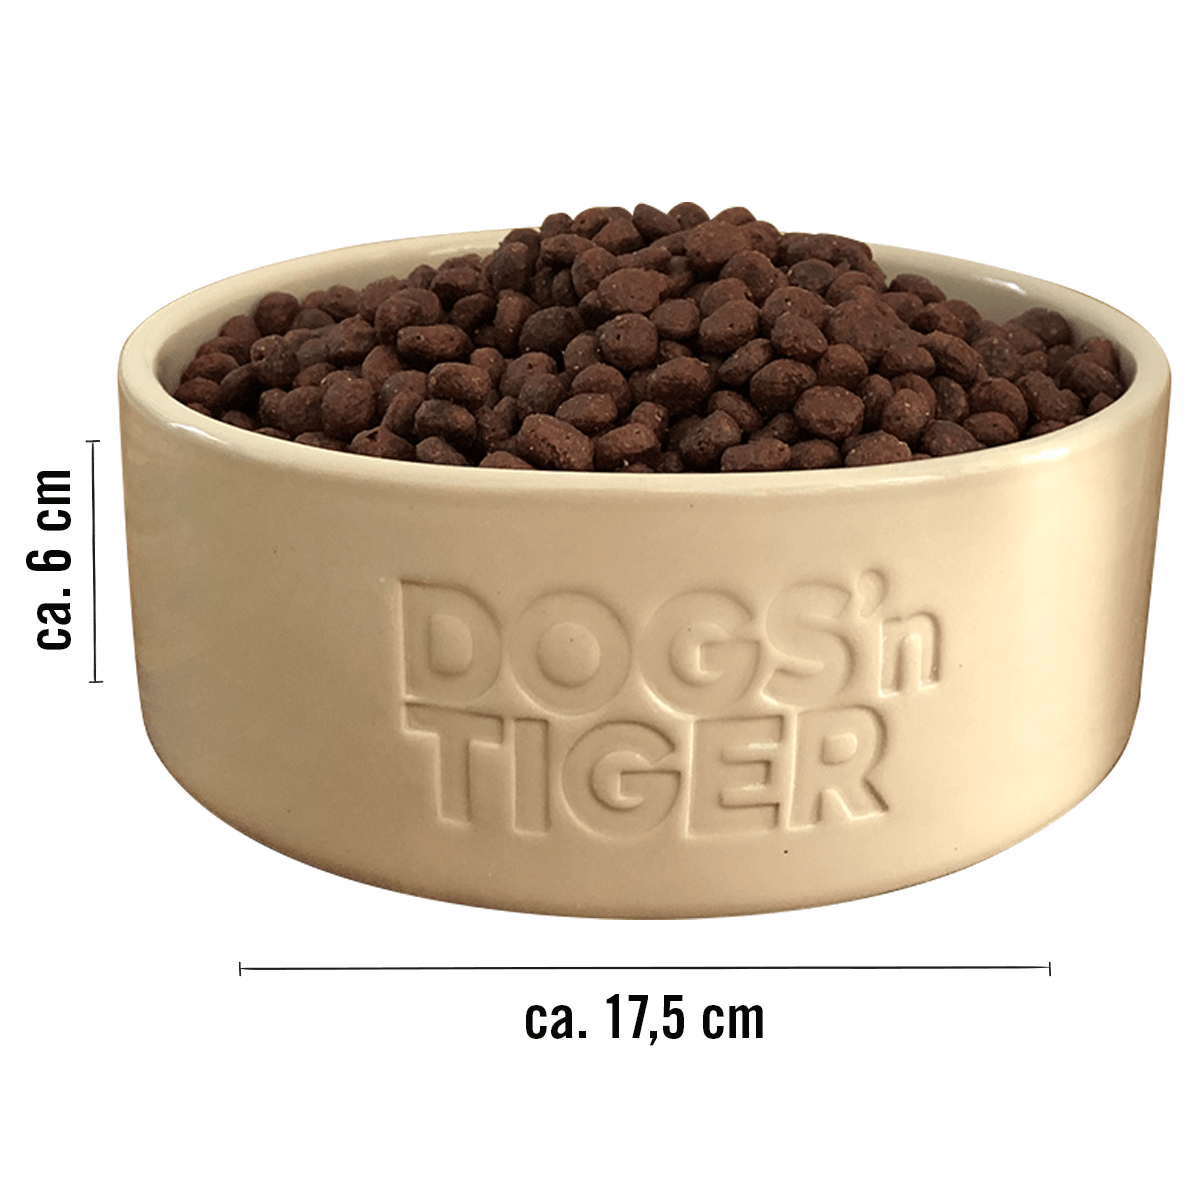 Dogs'n Tiger Futternapf mit Abmessungen: Durchmesser ca. 17,5 cm, Höhe ca. 6 cm